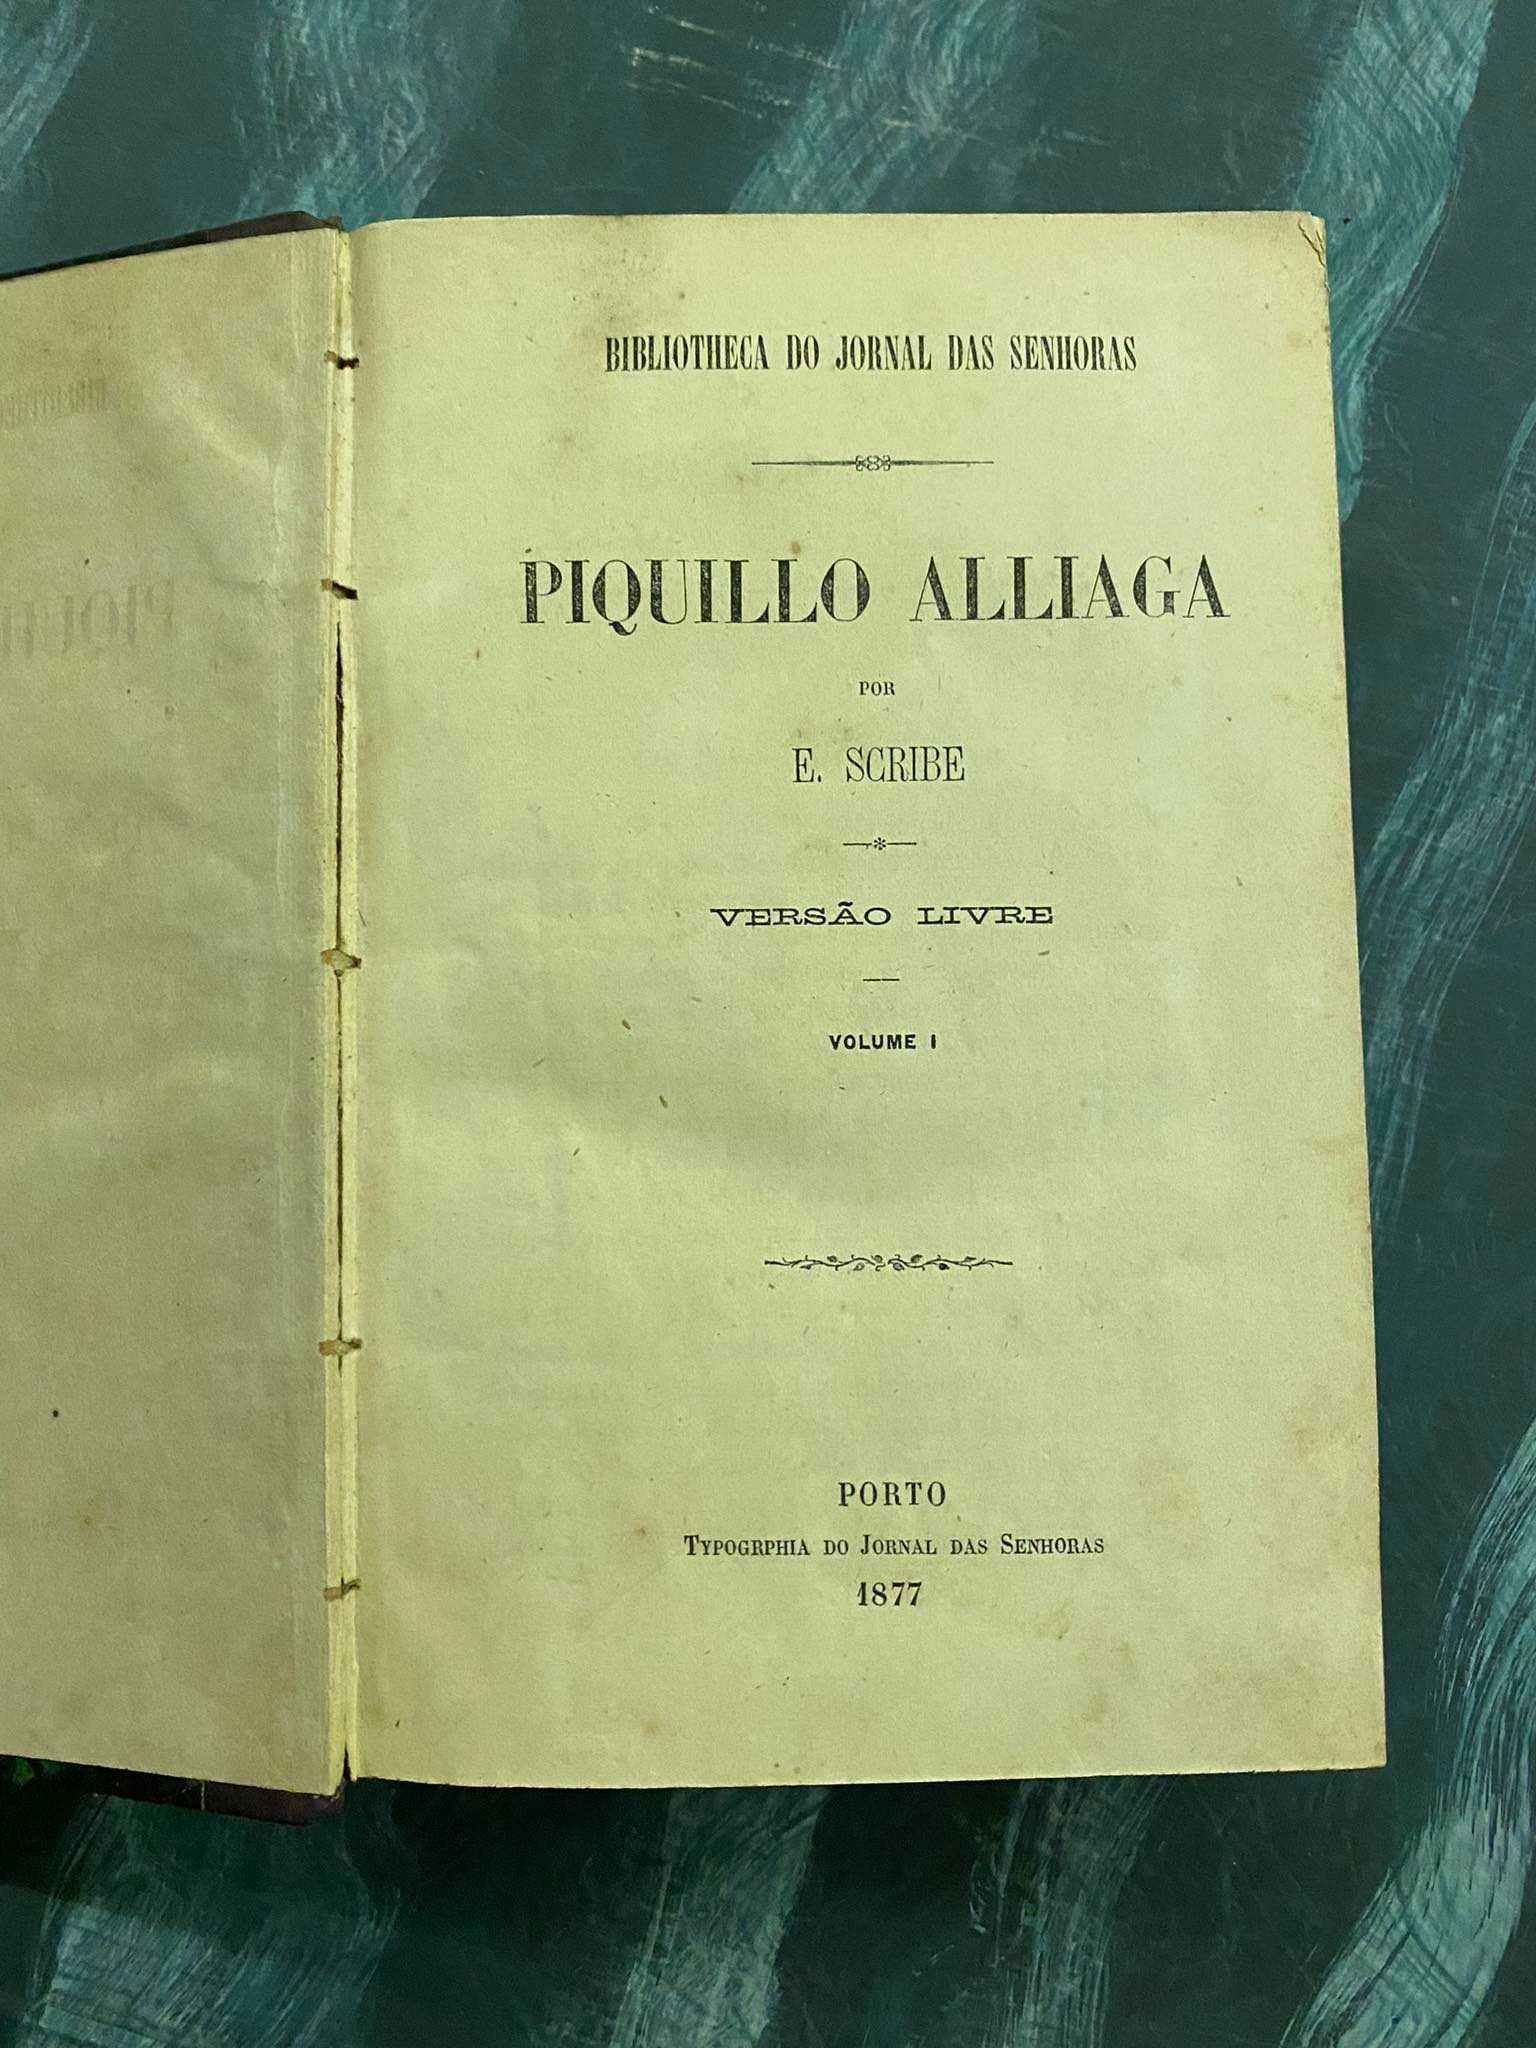 Piquillo Aliaga – E. Scribe